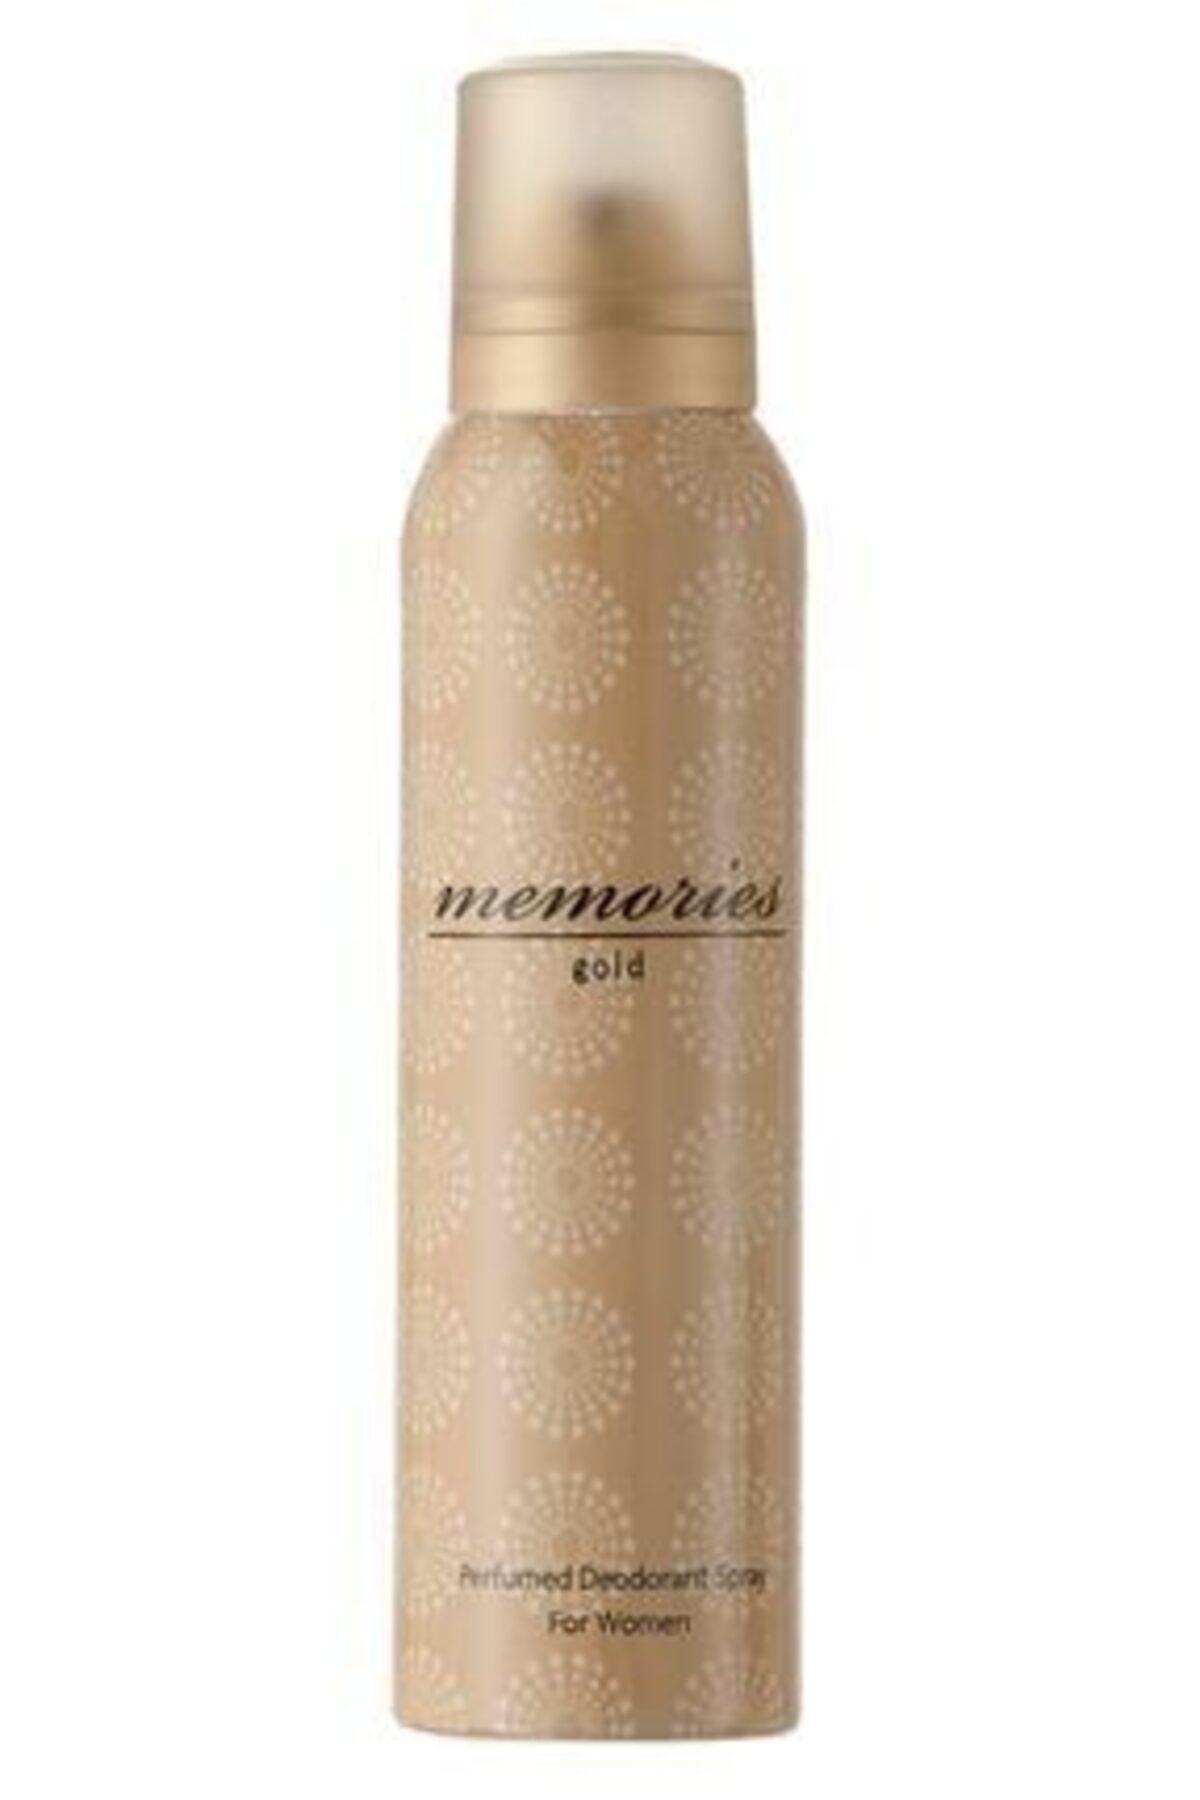 Huncalife Memories Gold Kadın Deodorant 150 ml